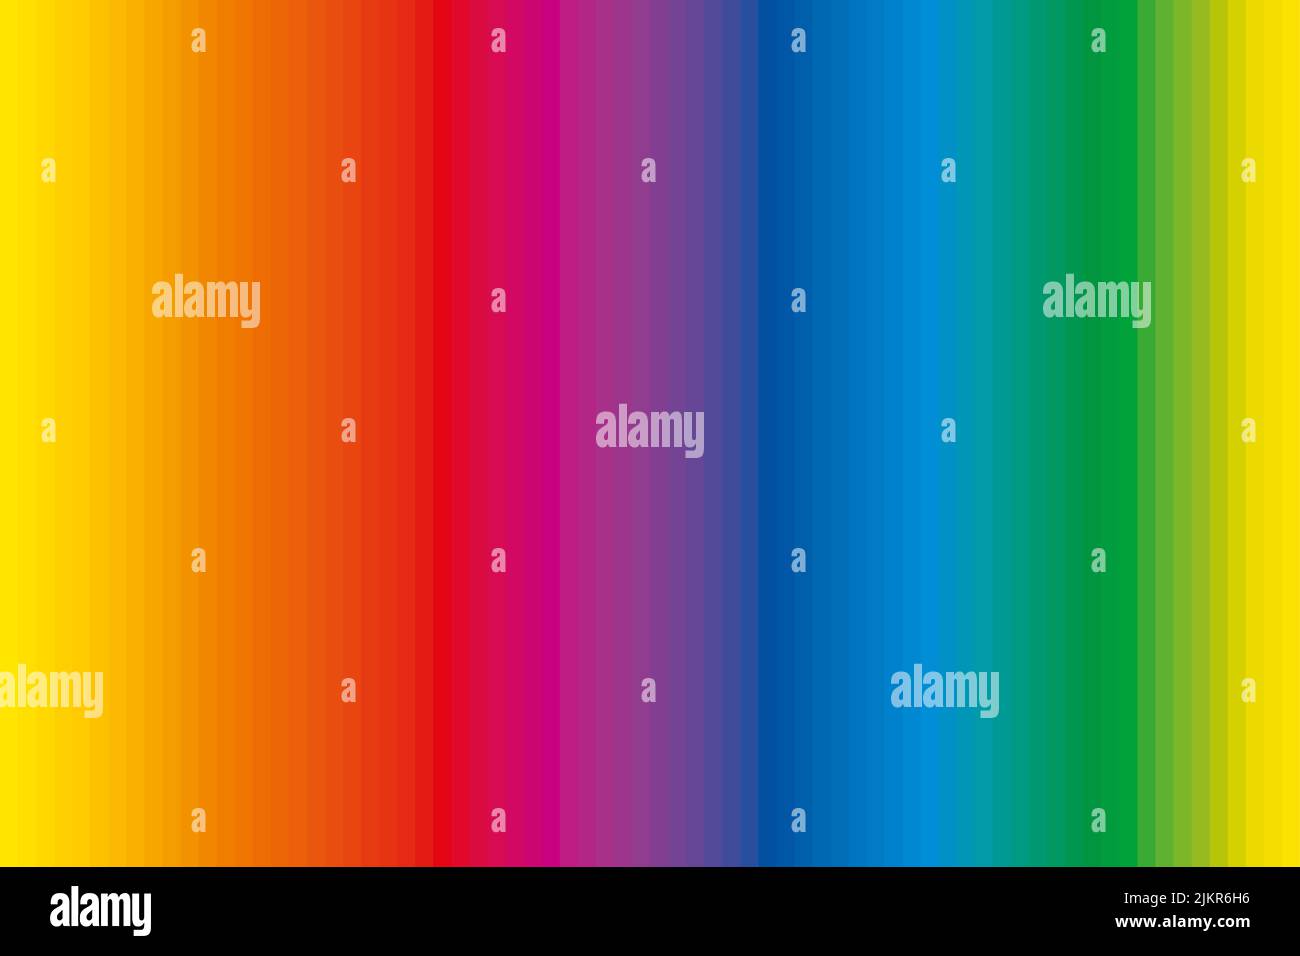 Farbkontrollstreifen mit komplementären Farben. Erweitertes Spektrum von 72 regenbogenfarbenen Streifen, einzigartige Farbtöne in einer Reihe, abgeleitet von einem Farbrad. Stockfoto